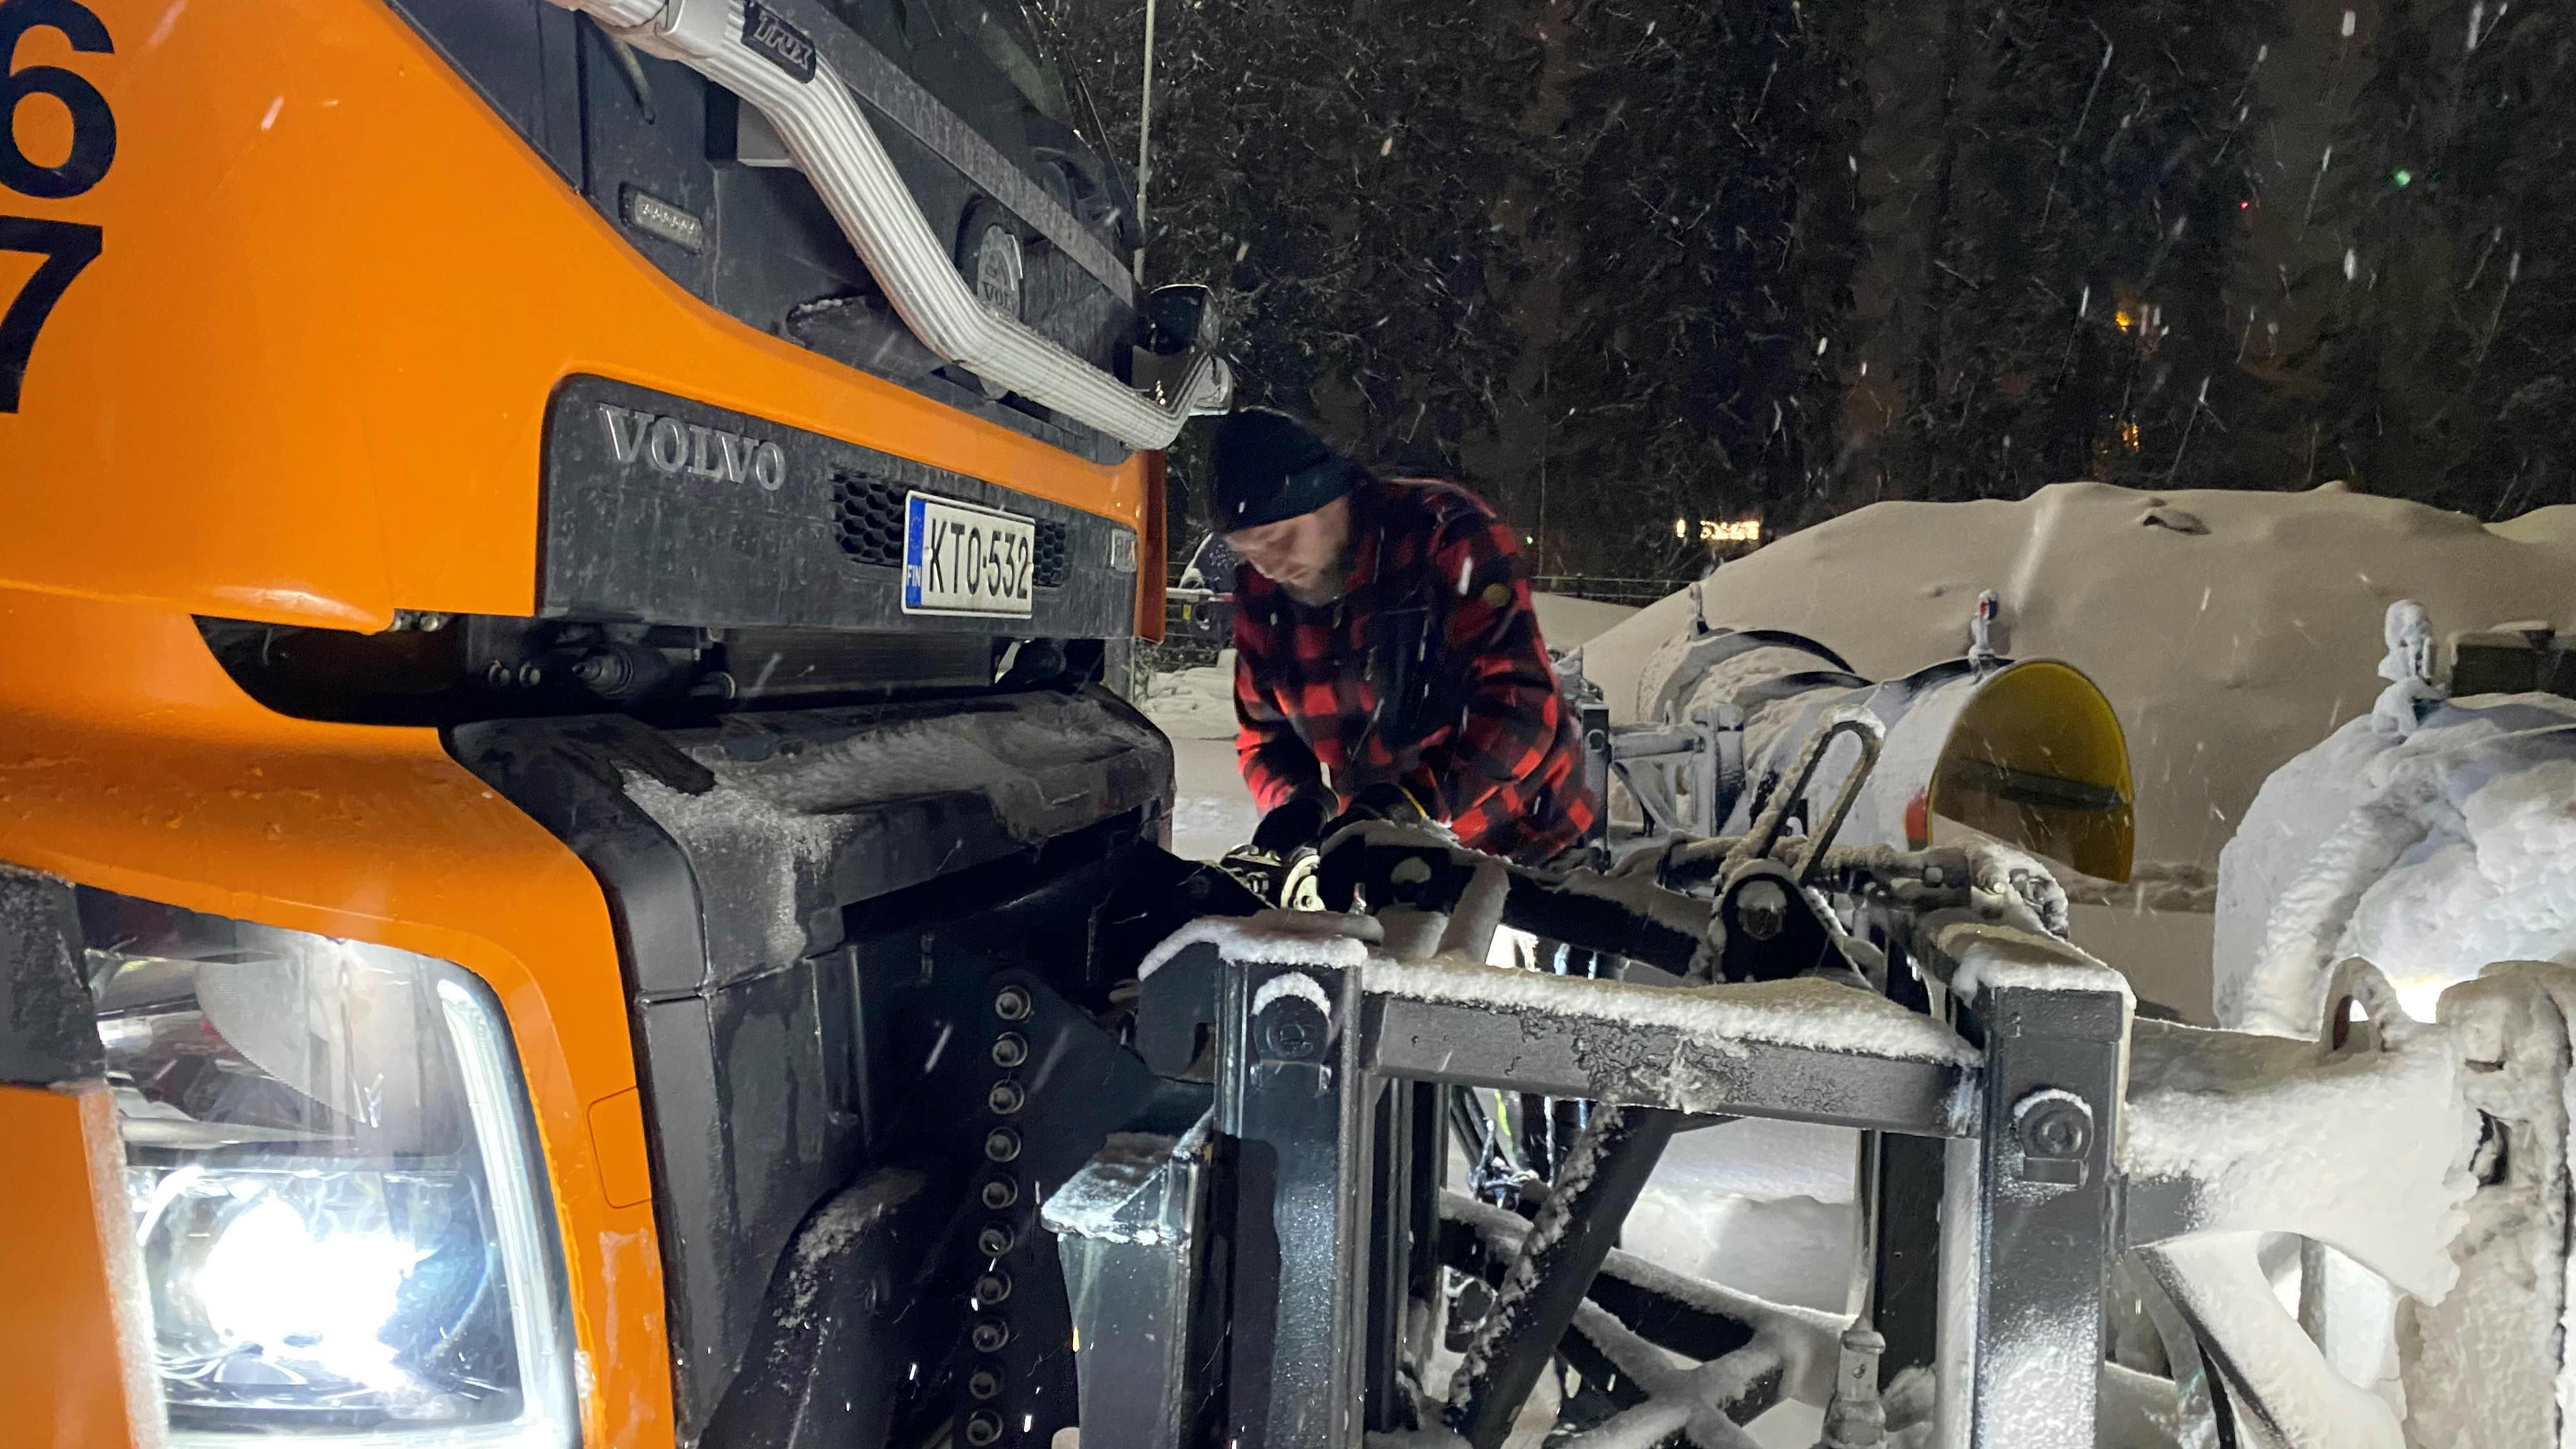 Riihimäen kaupungin kunnossapidon työntekijä Toni Kokkonen asentaa auraa kuorma-auton nokkaan lumisateessa pimeänä aamuna.